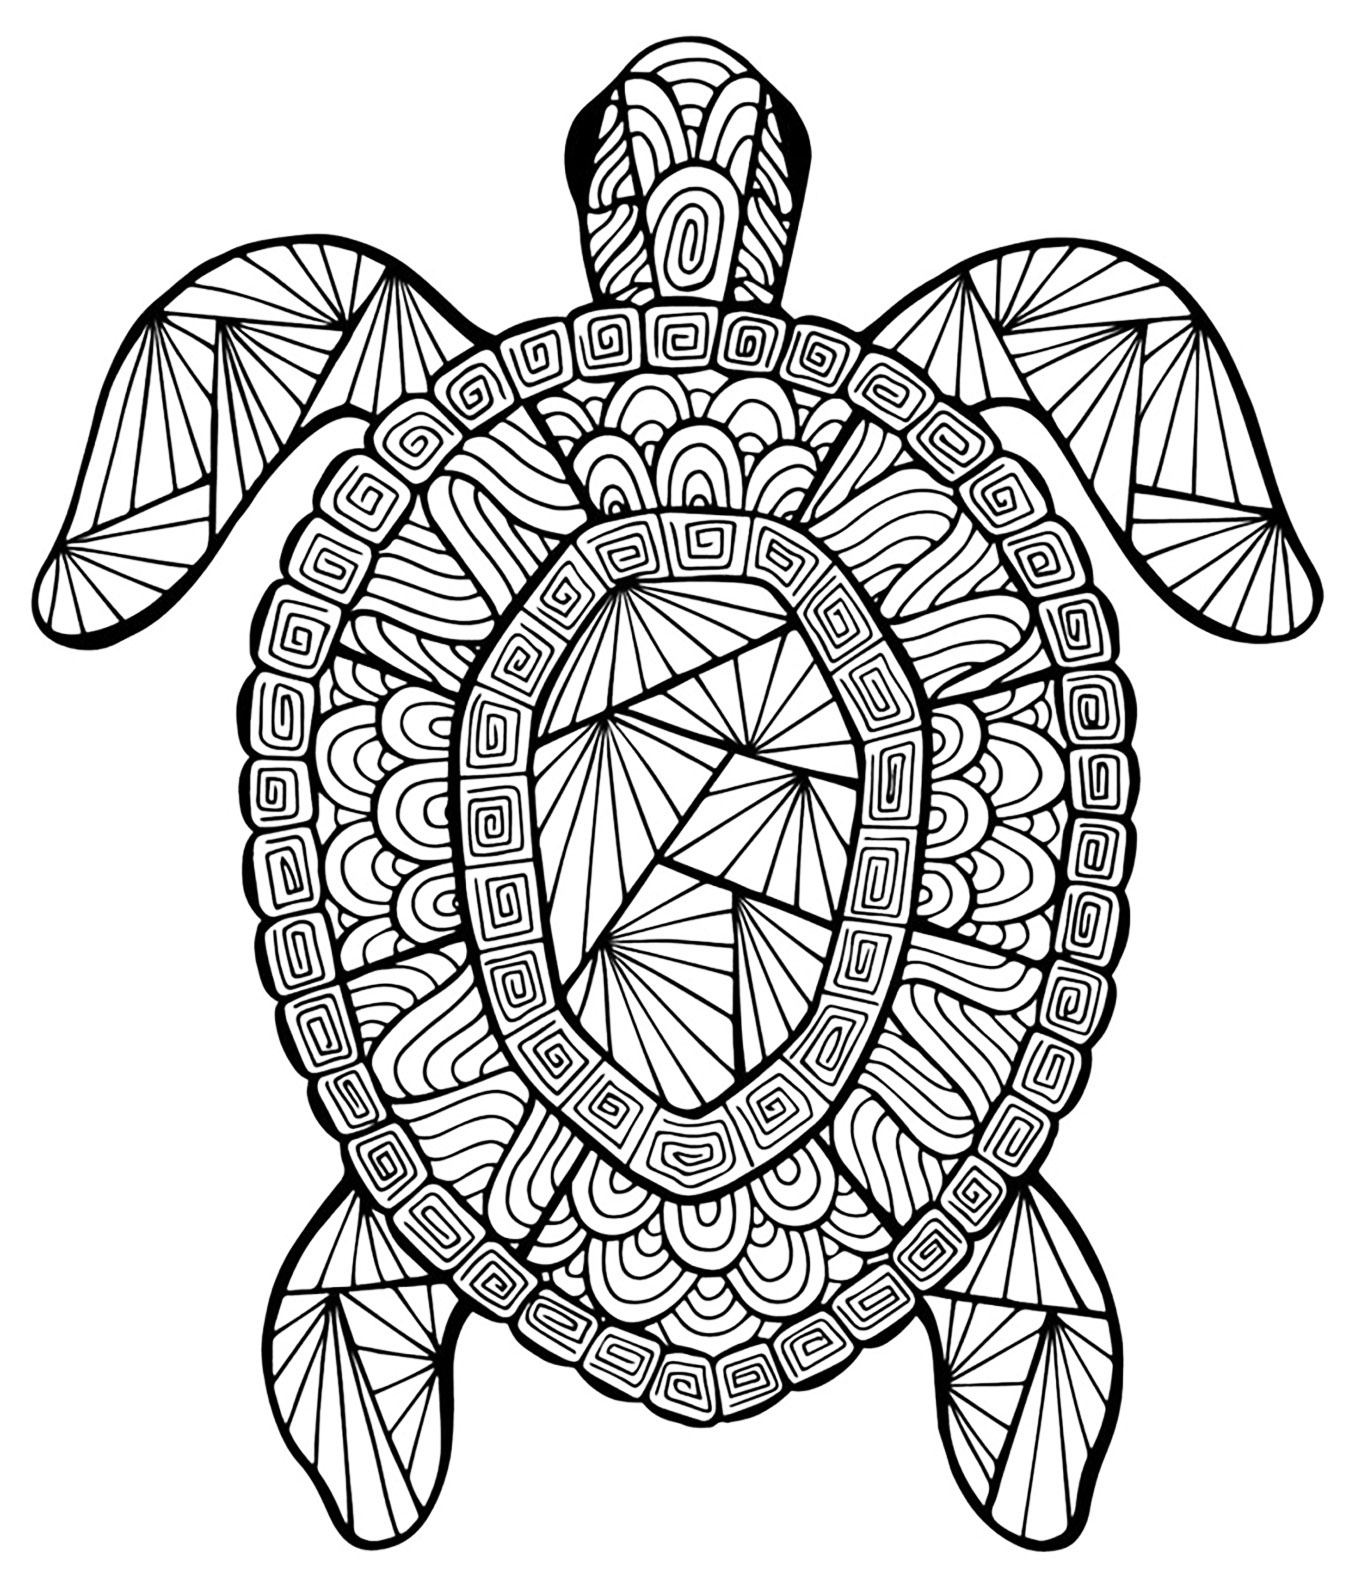 tortue coloriages danimaux 100 mandalas zen anti stress pour coloriage jolie